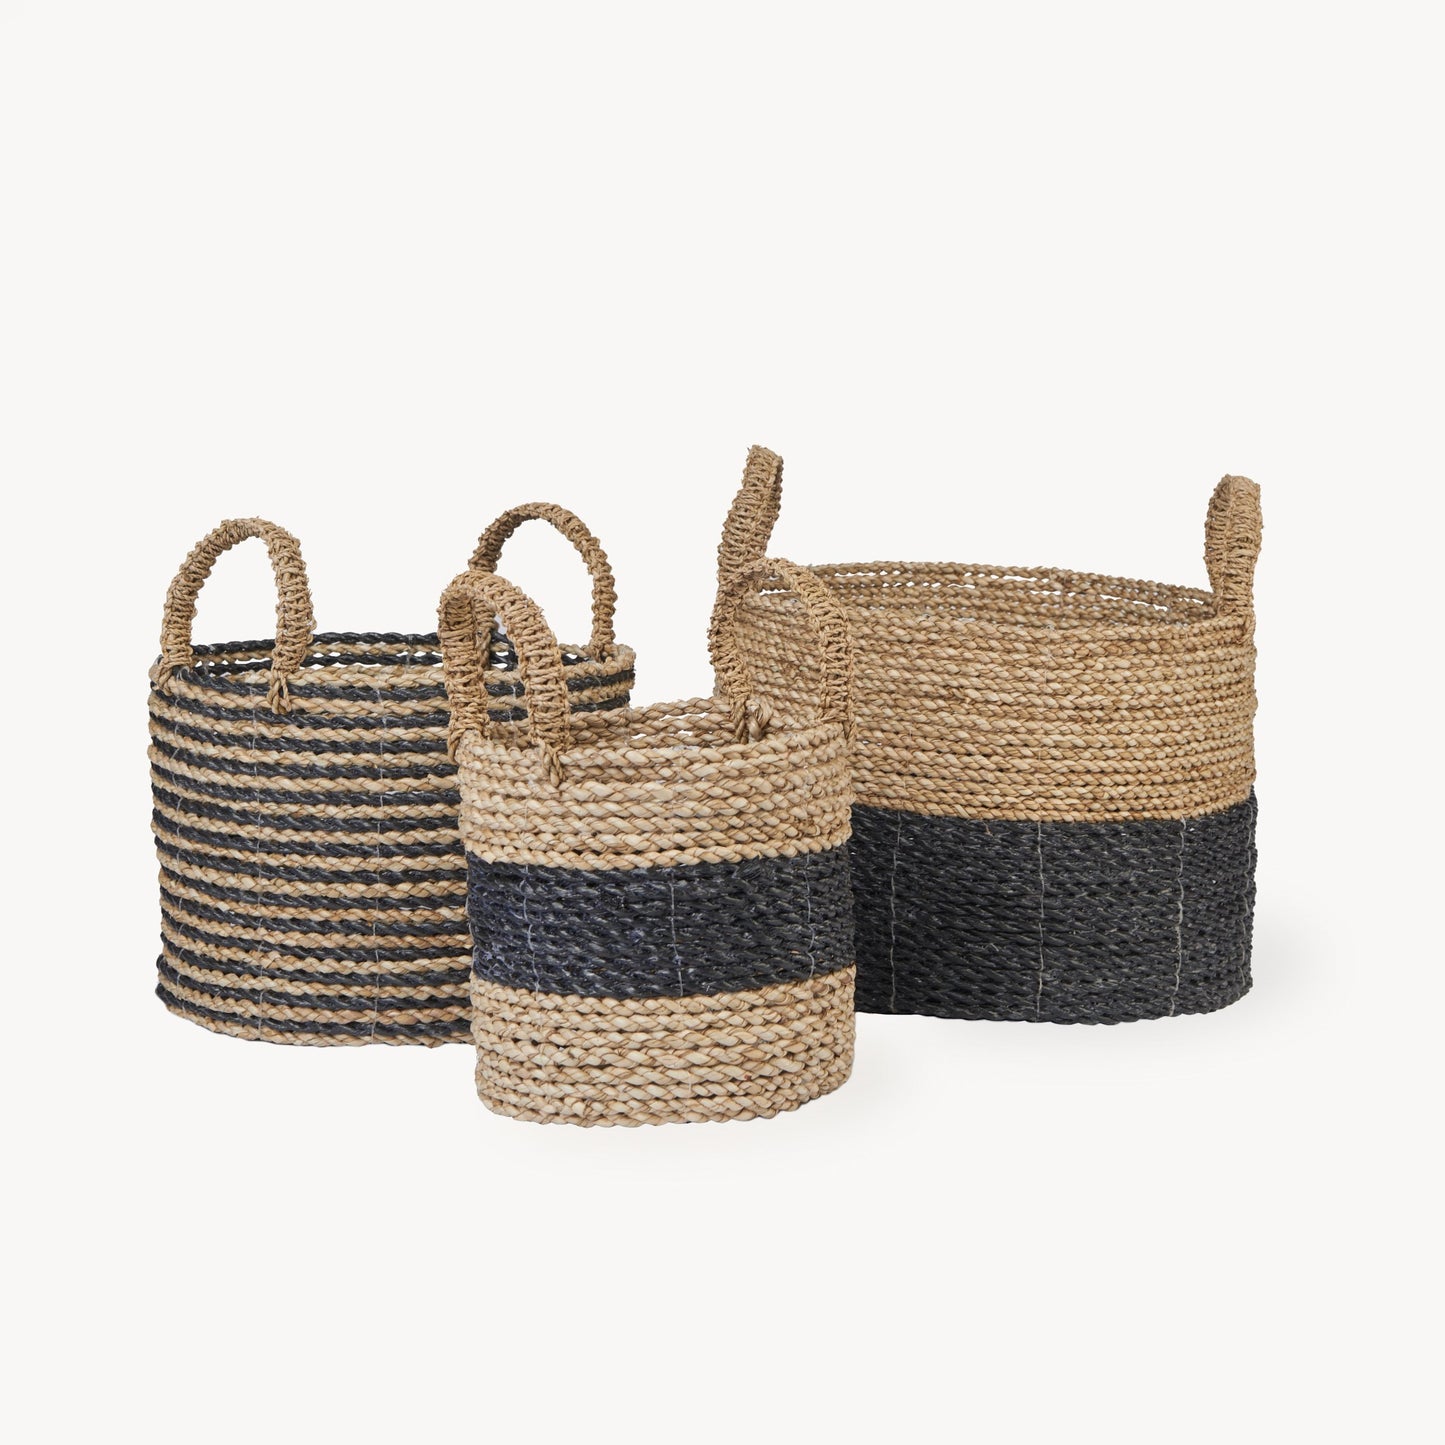 Set of 3 Handled Baskets - Black/Natural